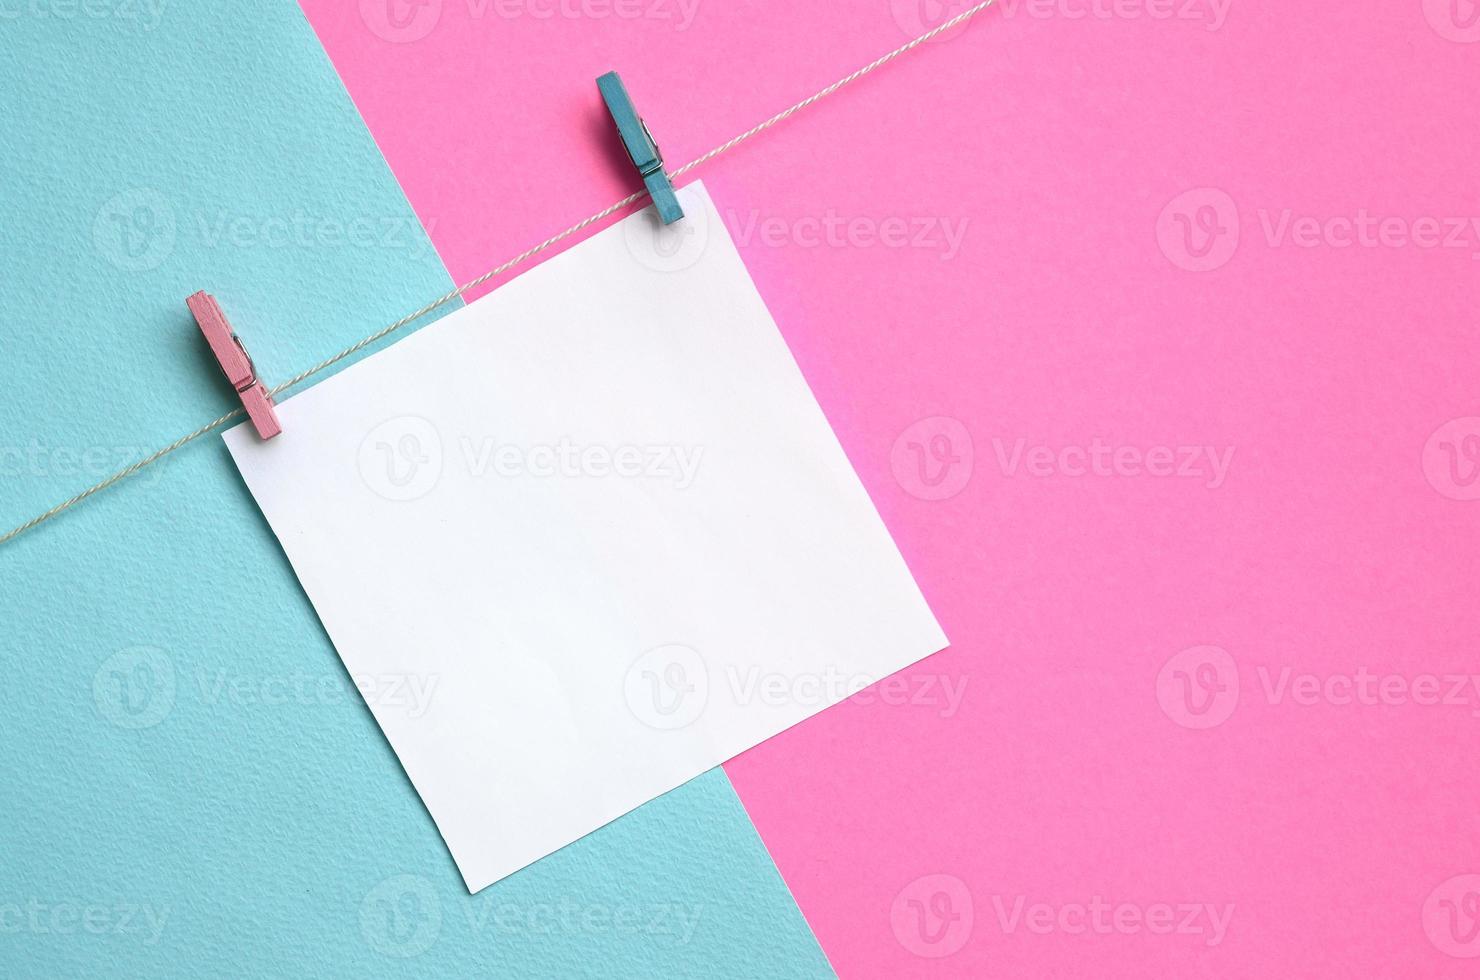 en bit av papper är hängande på en rep med pinnar på textur bakgrund av mode pastell blå och rosa färger papper i minimal begrepp foto